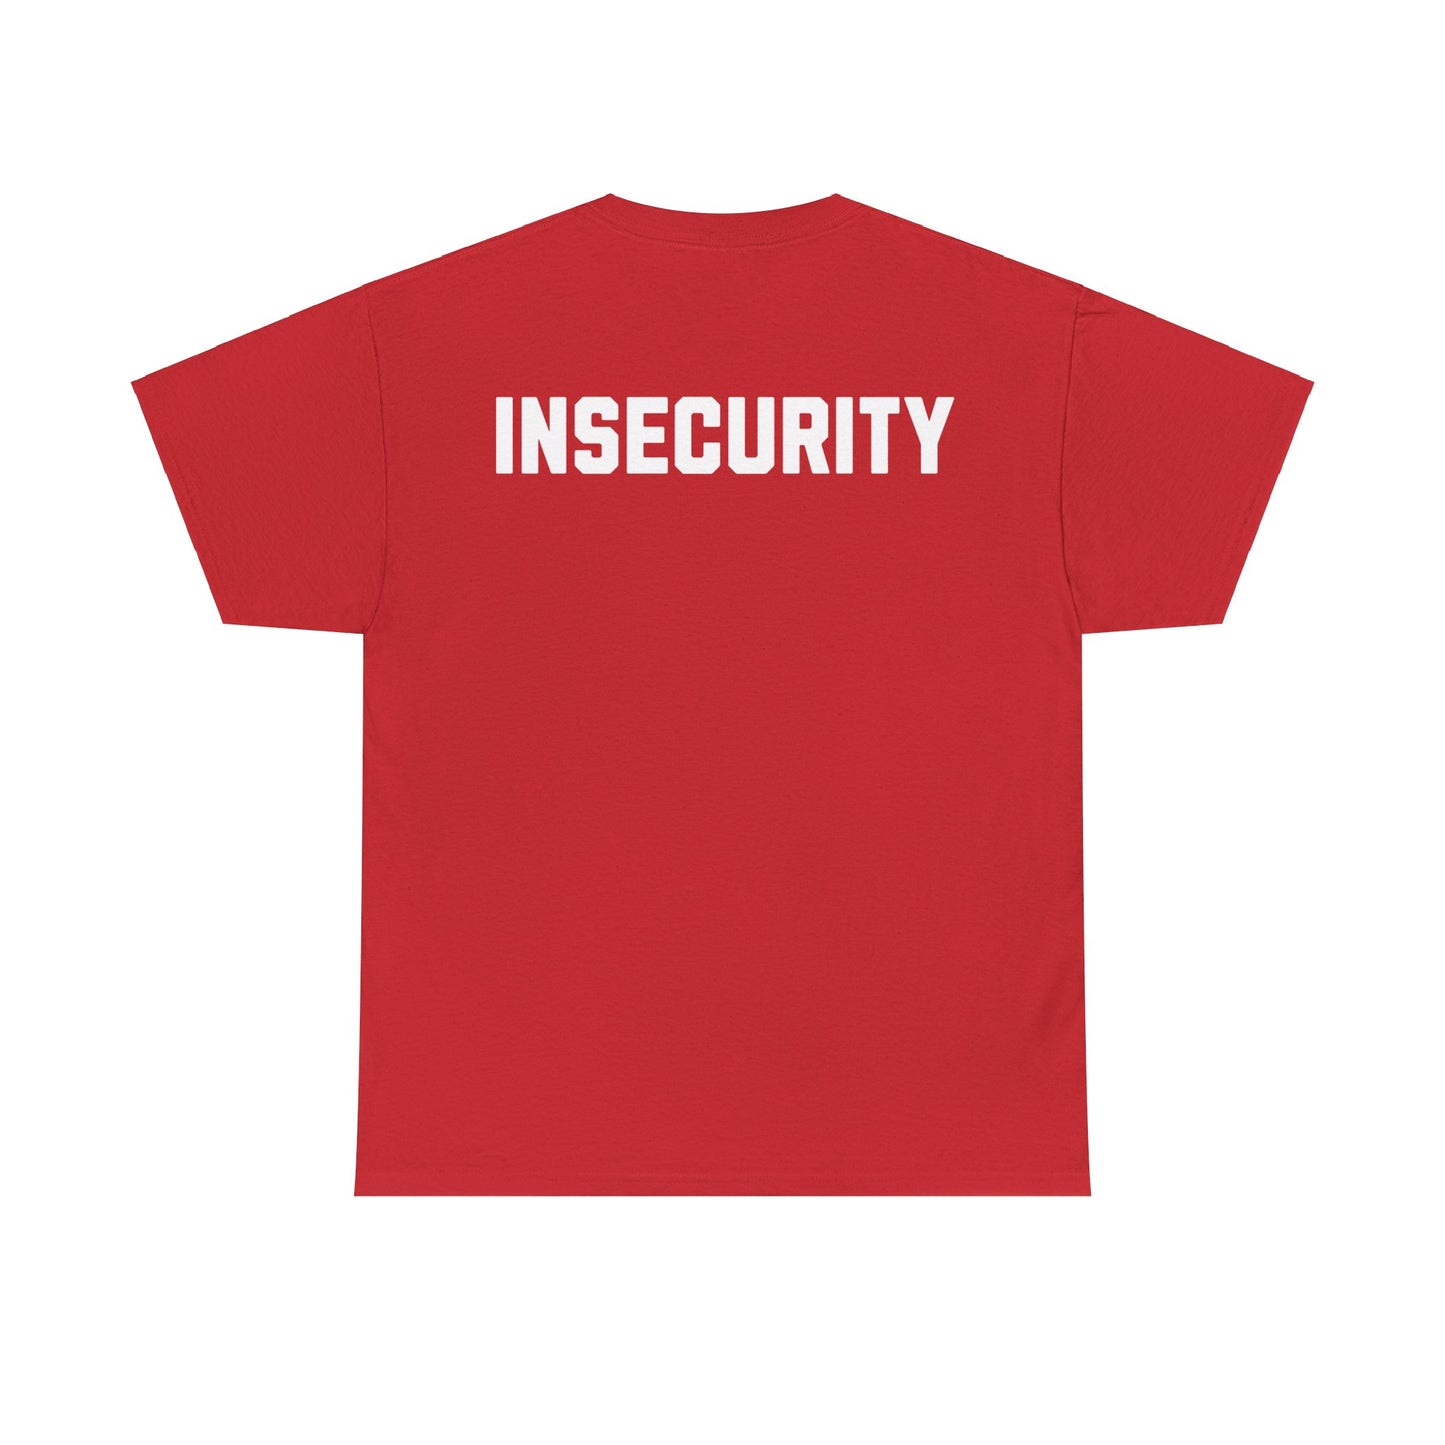 Einzigartiges "Insecurity" T-Shirt - Coole Anspielung auf Security-Shirts. Hochwertiges Baumwoll-Shirt mit witzigem Aufdruck für Nerds, Geeks & Sicherheitsexperten. Perfekt für Conventions, Büro oder Freizeit. Sichern Sie sich jetzt dieses Must-Have für Ihre Streetwear-Kollektion! Insecurity Joke Security Backrpint